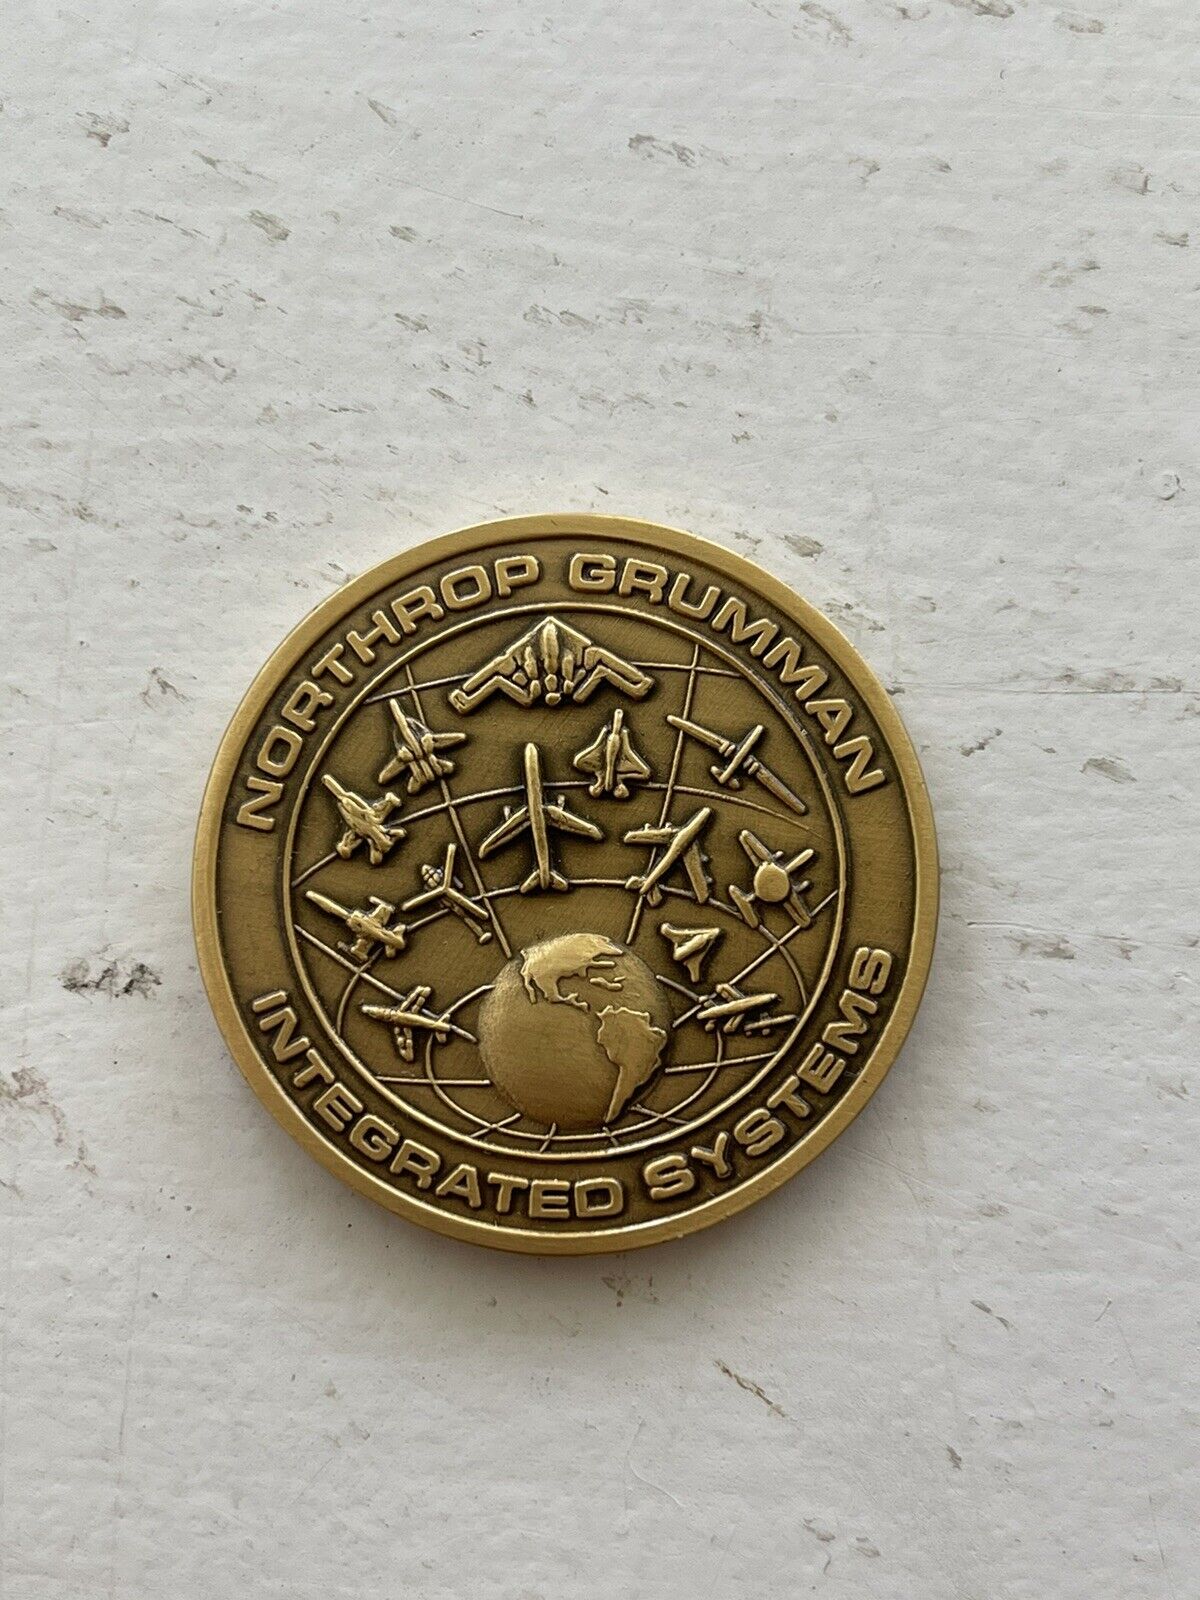 2003 Northrop Grumman Integrated Systems Centennial Of Flight Anniversary Coin